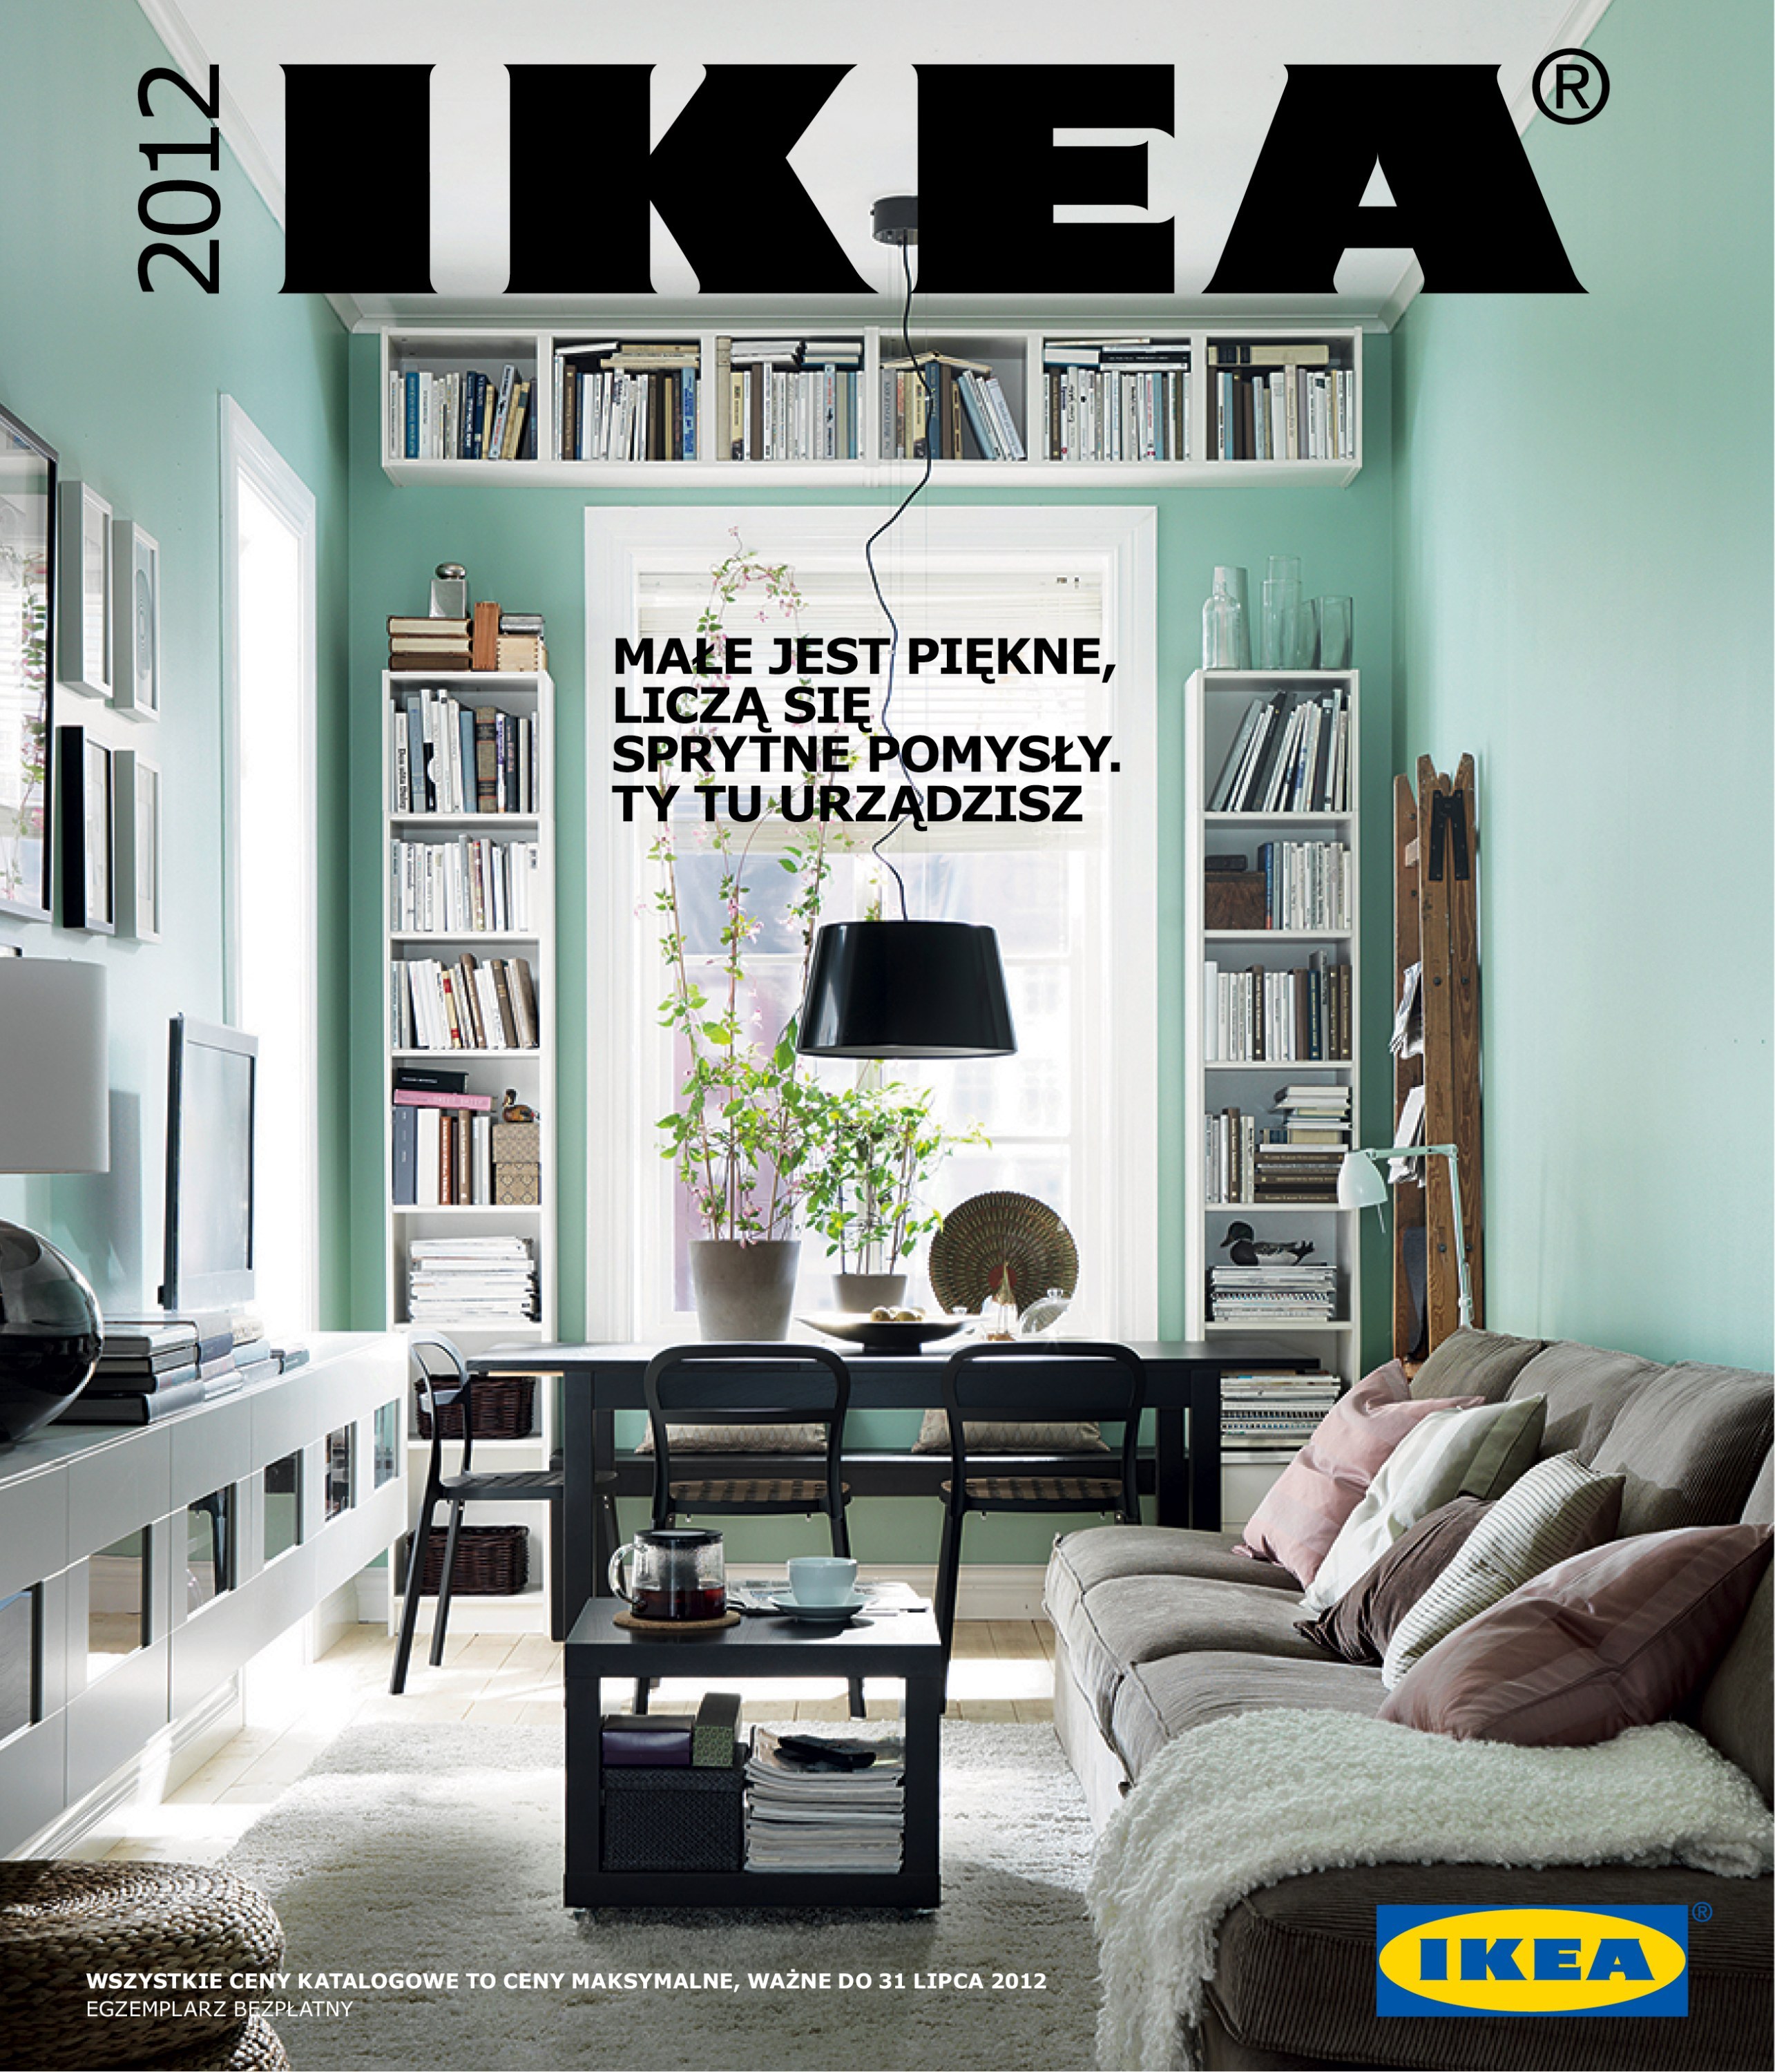 Ikea Finishes Publishing Its Iconic Catalog